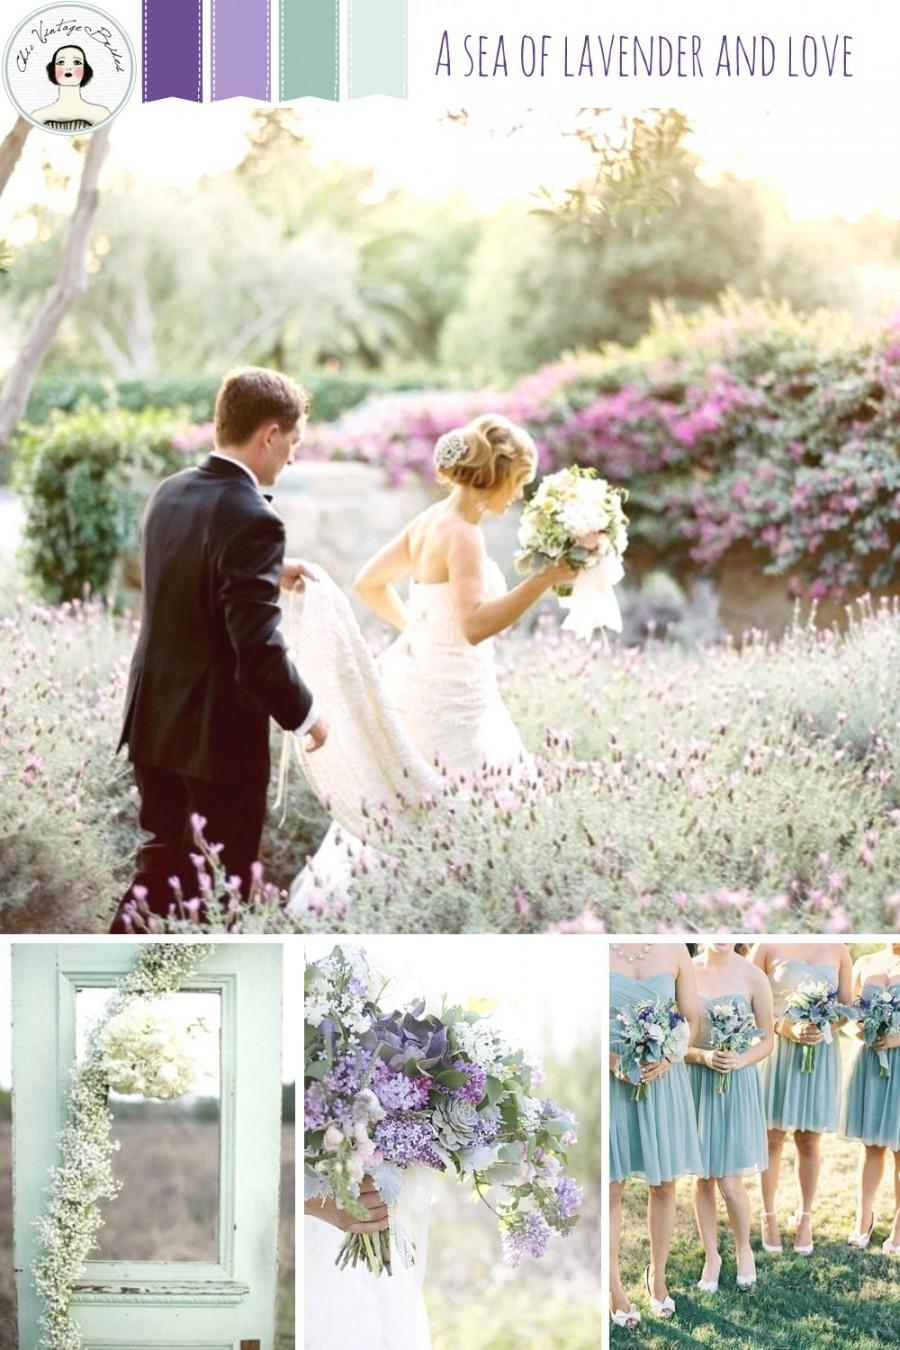 زفاف - A Sea of Lavender and Love - Romantic Wedding Inspiration in Shades of Lavender and Seafoam